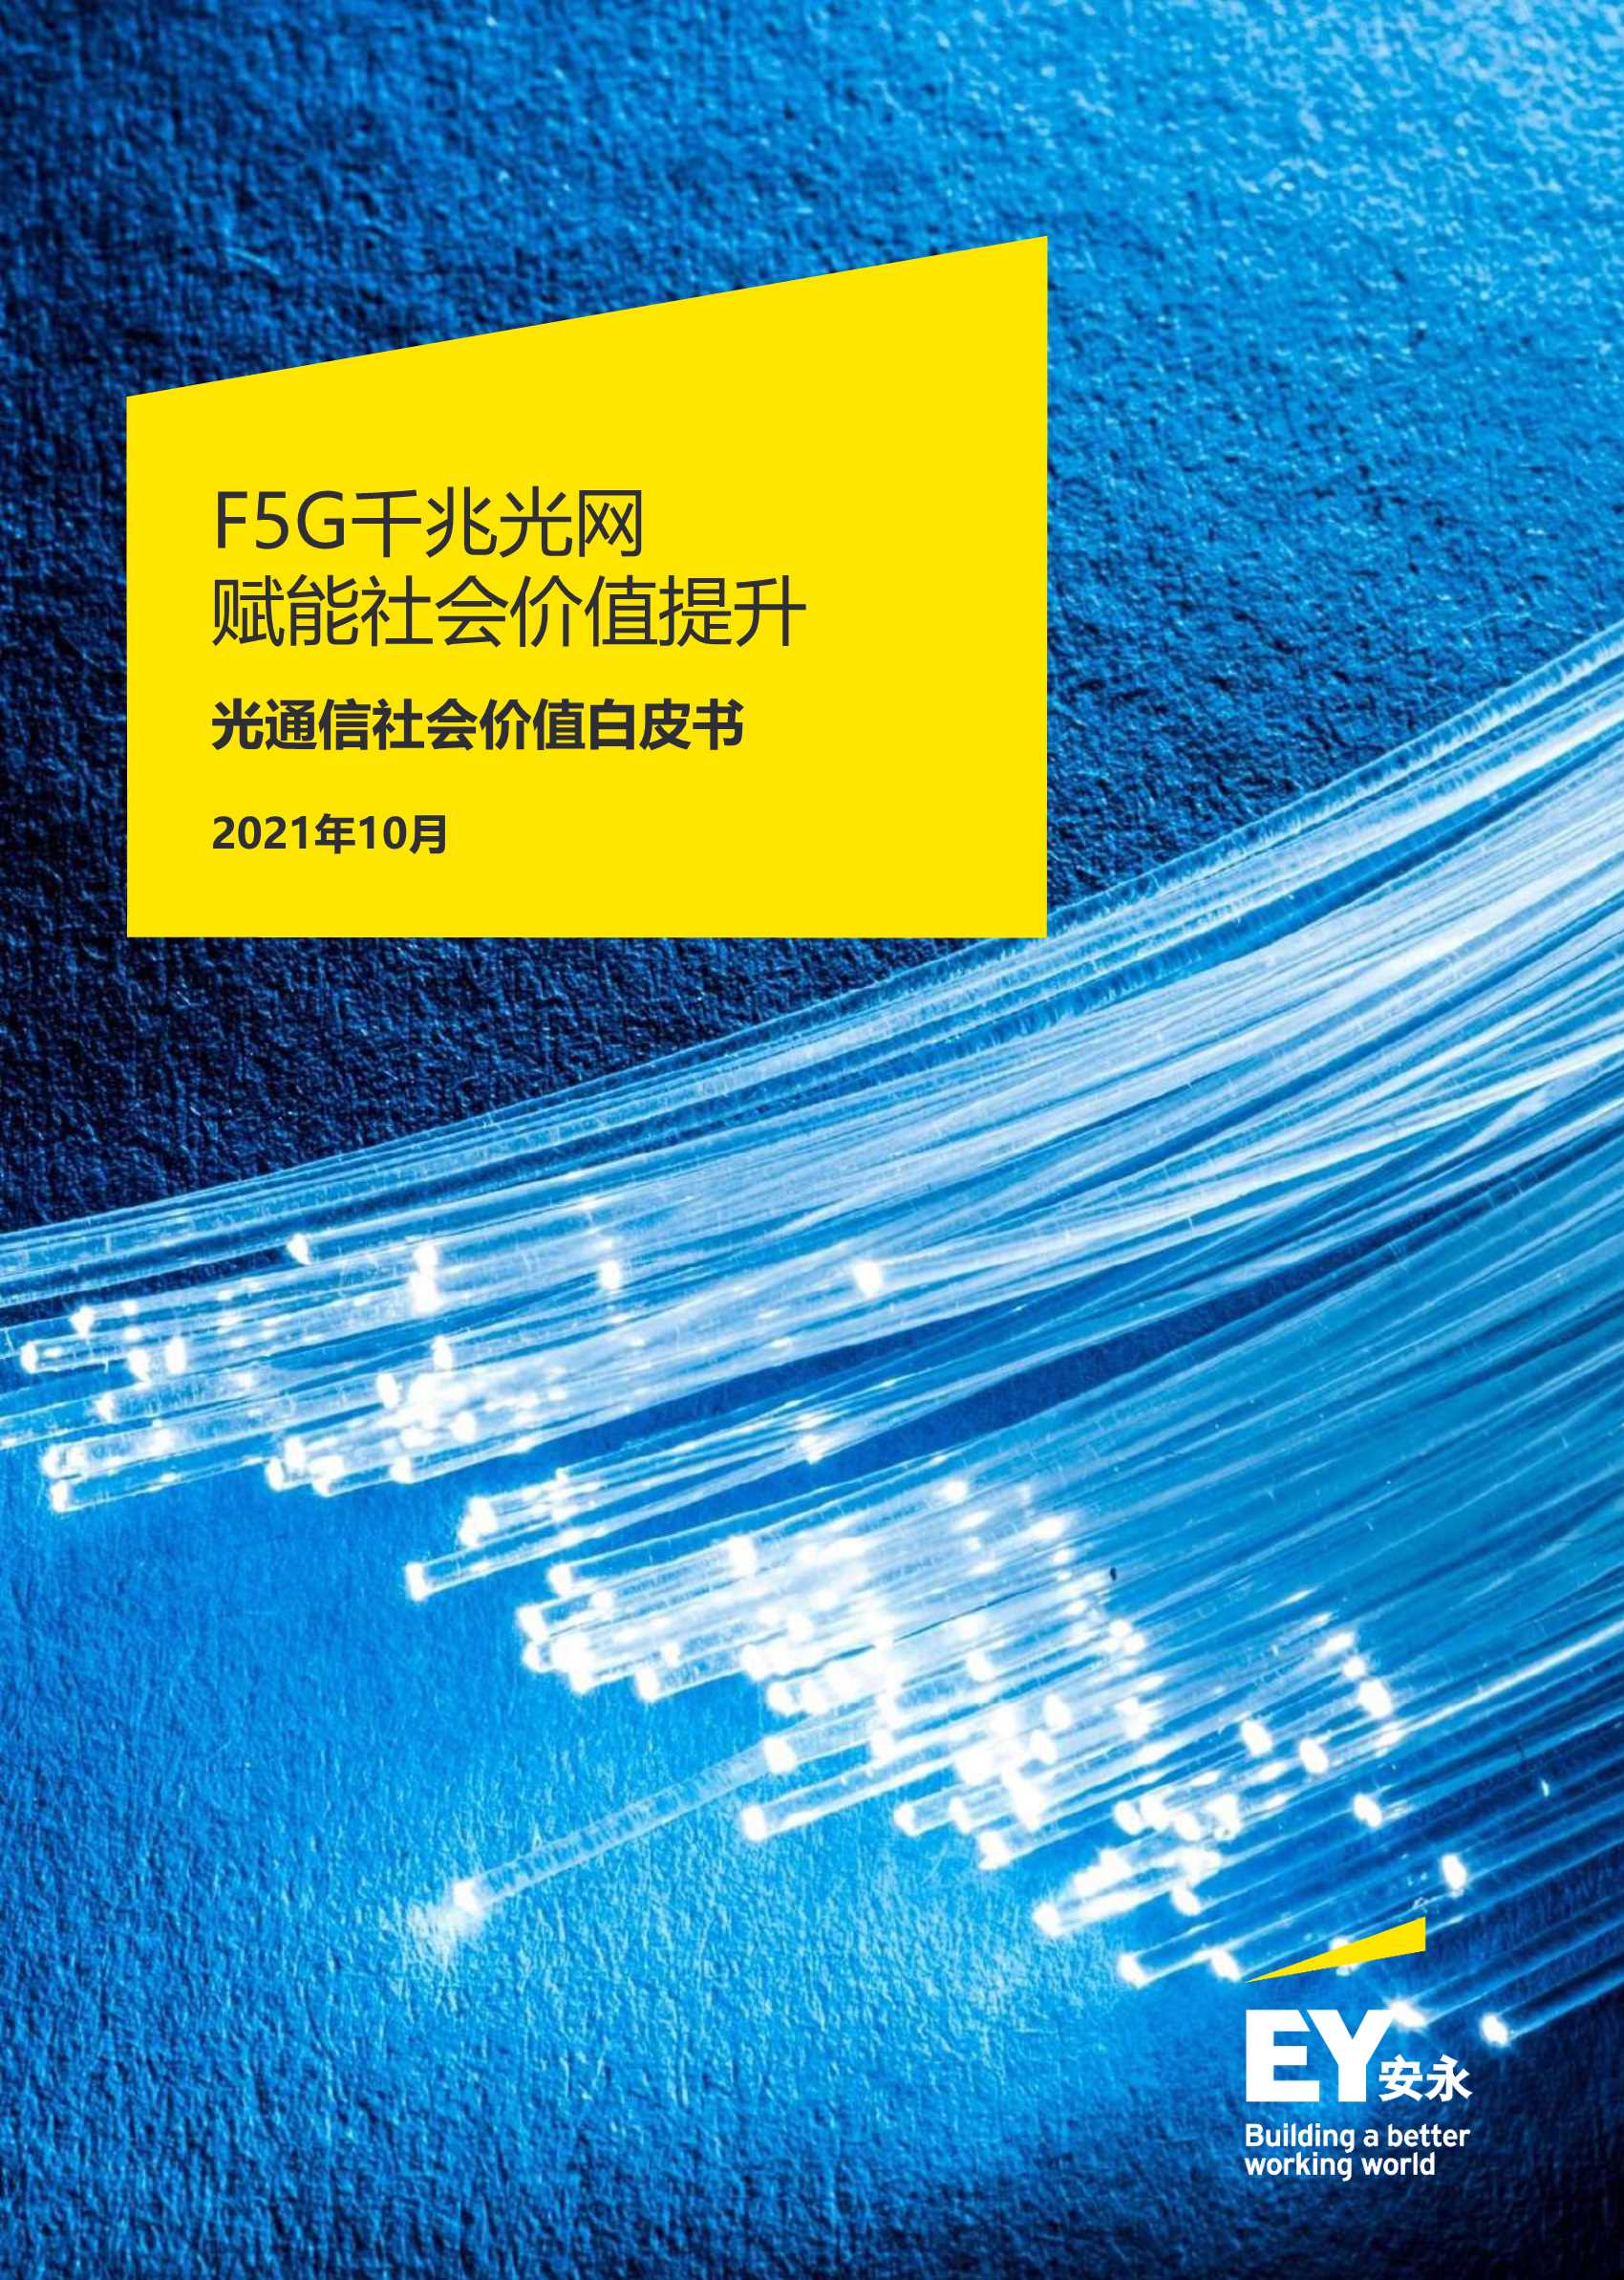 安永-通信行业光通信社会价值白皮书：F5G千兆光网赋能社会价值提升-2021.11-92页